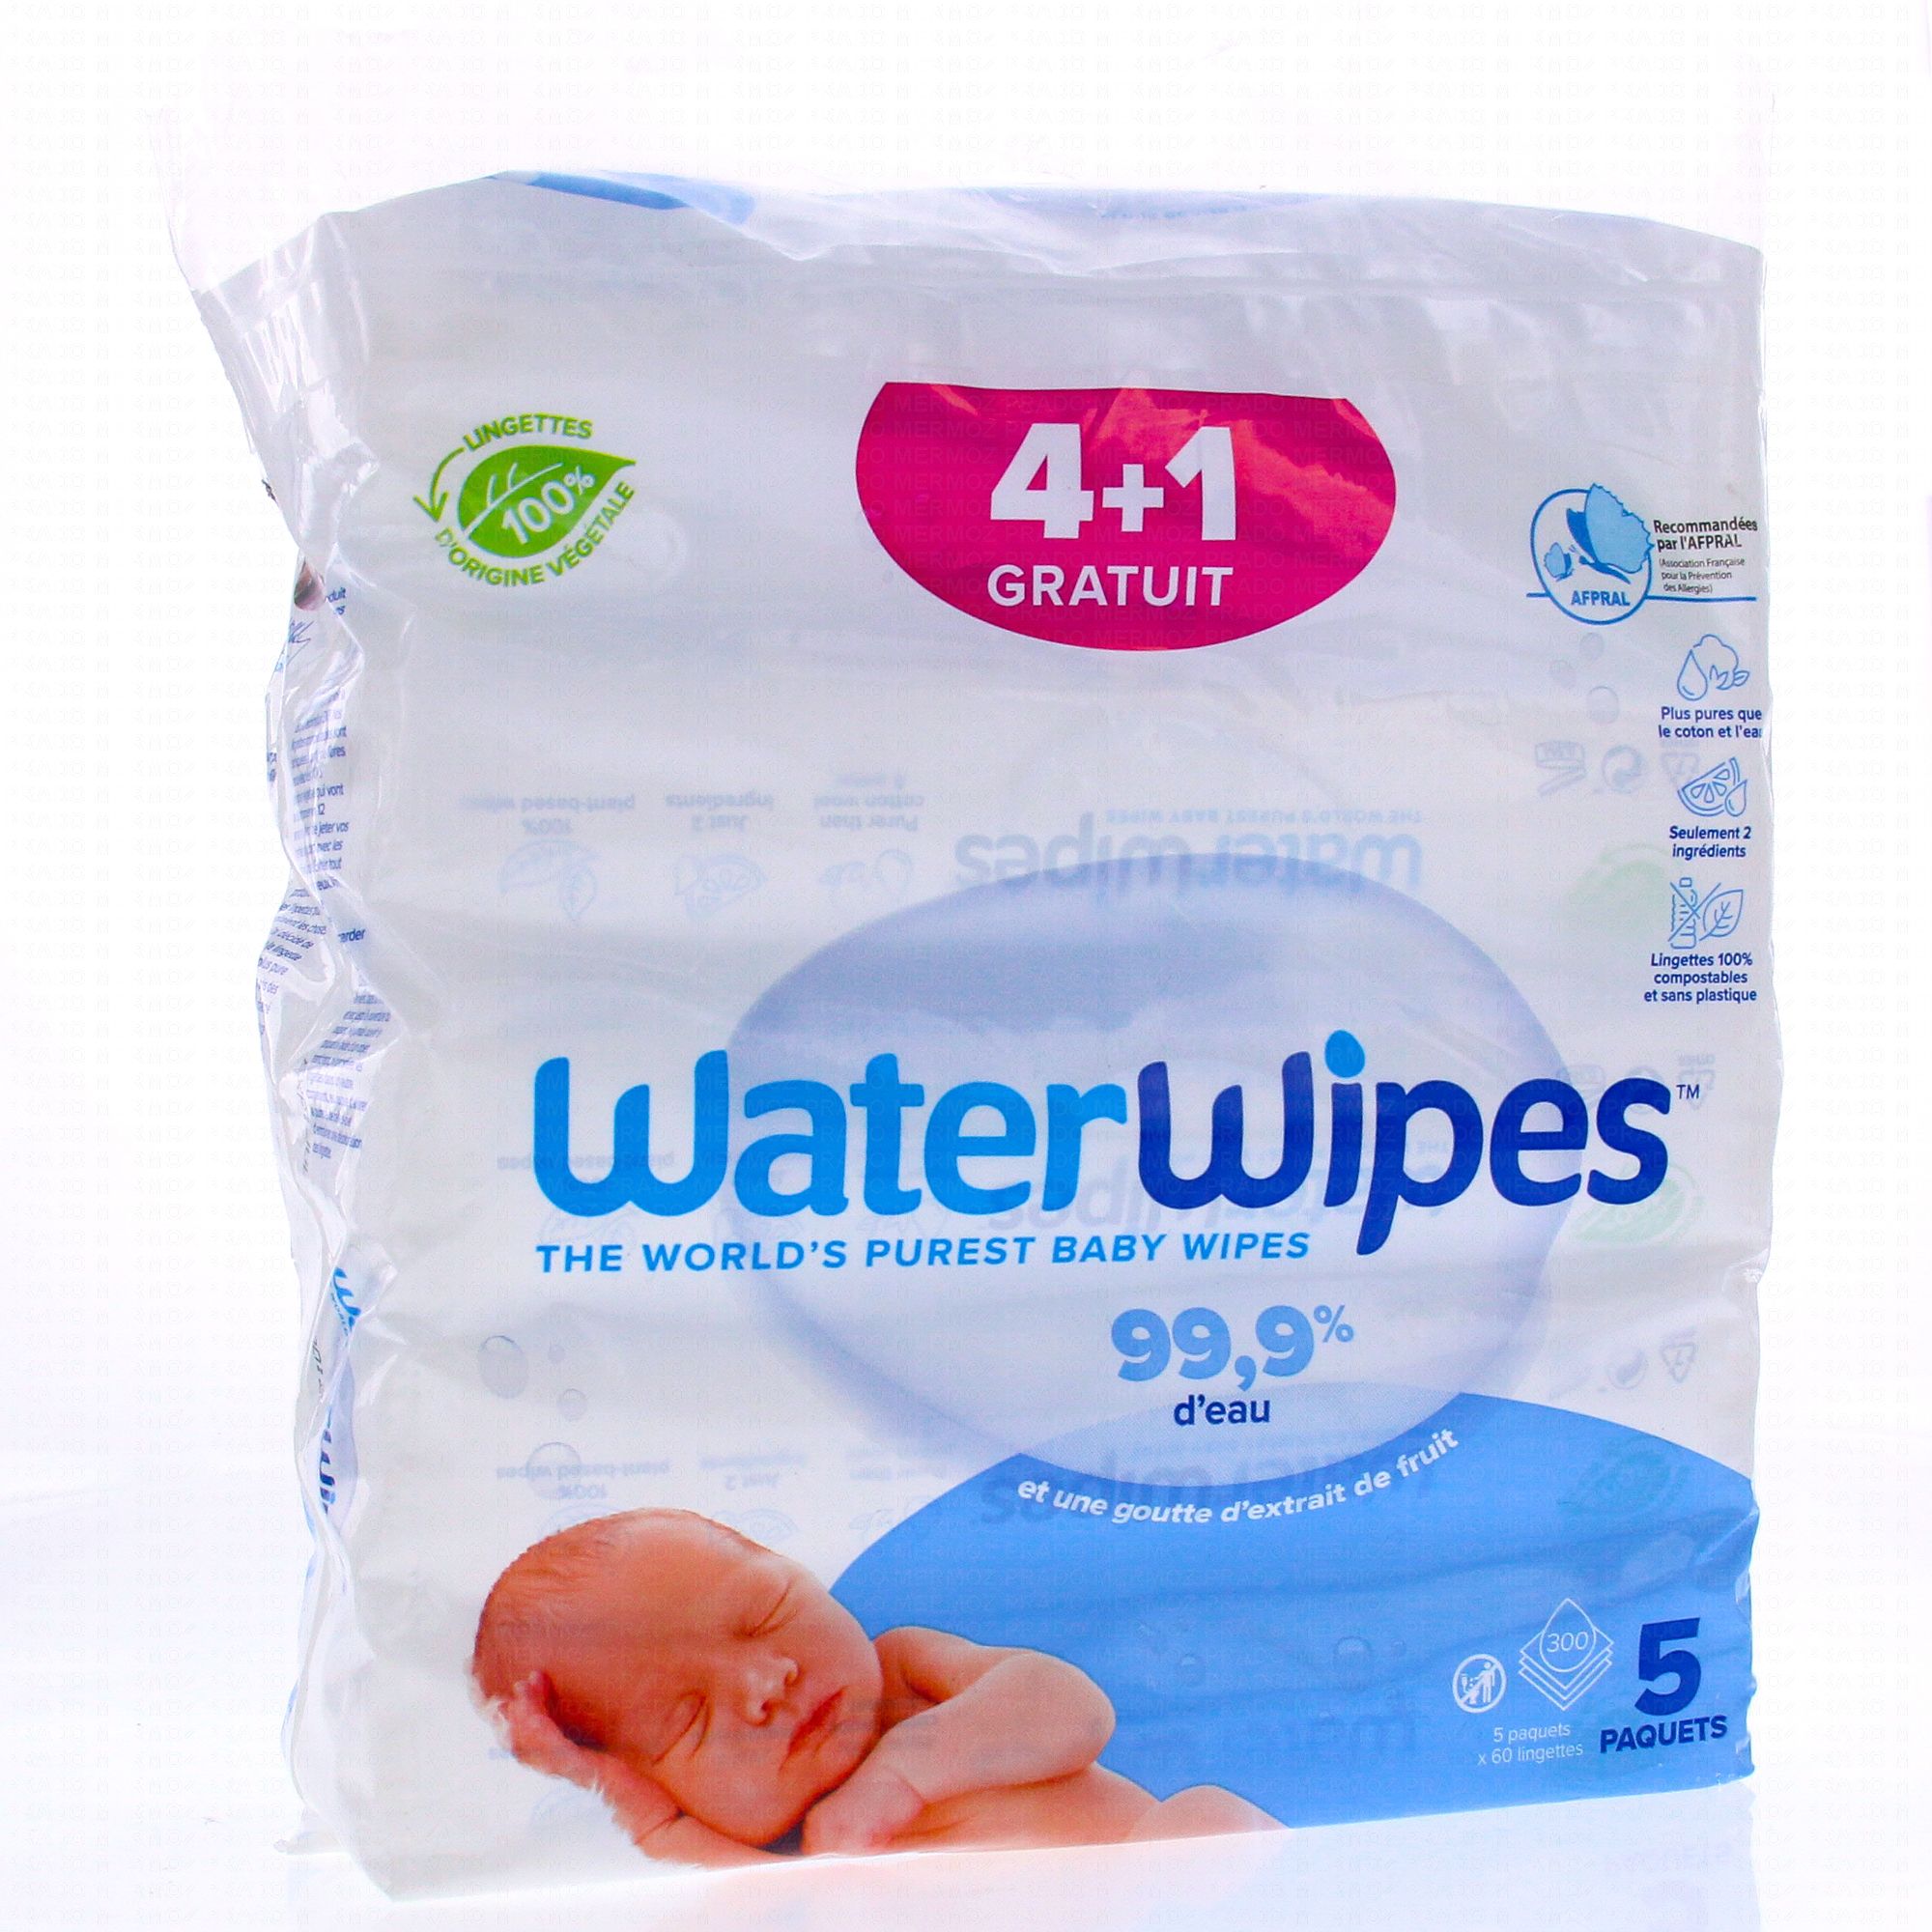 Acheter le paquet de valeur de lingettes pour bébé WaterWipes à